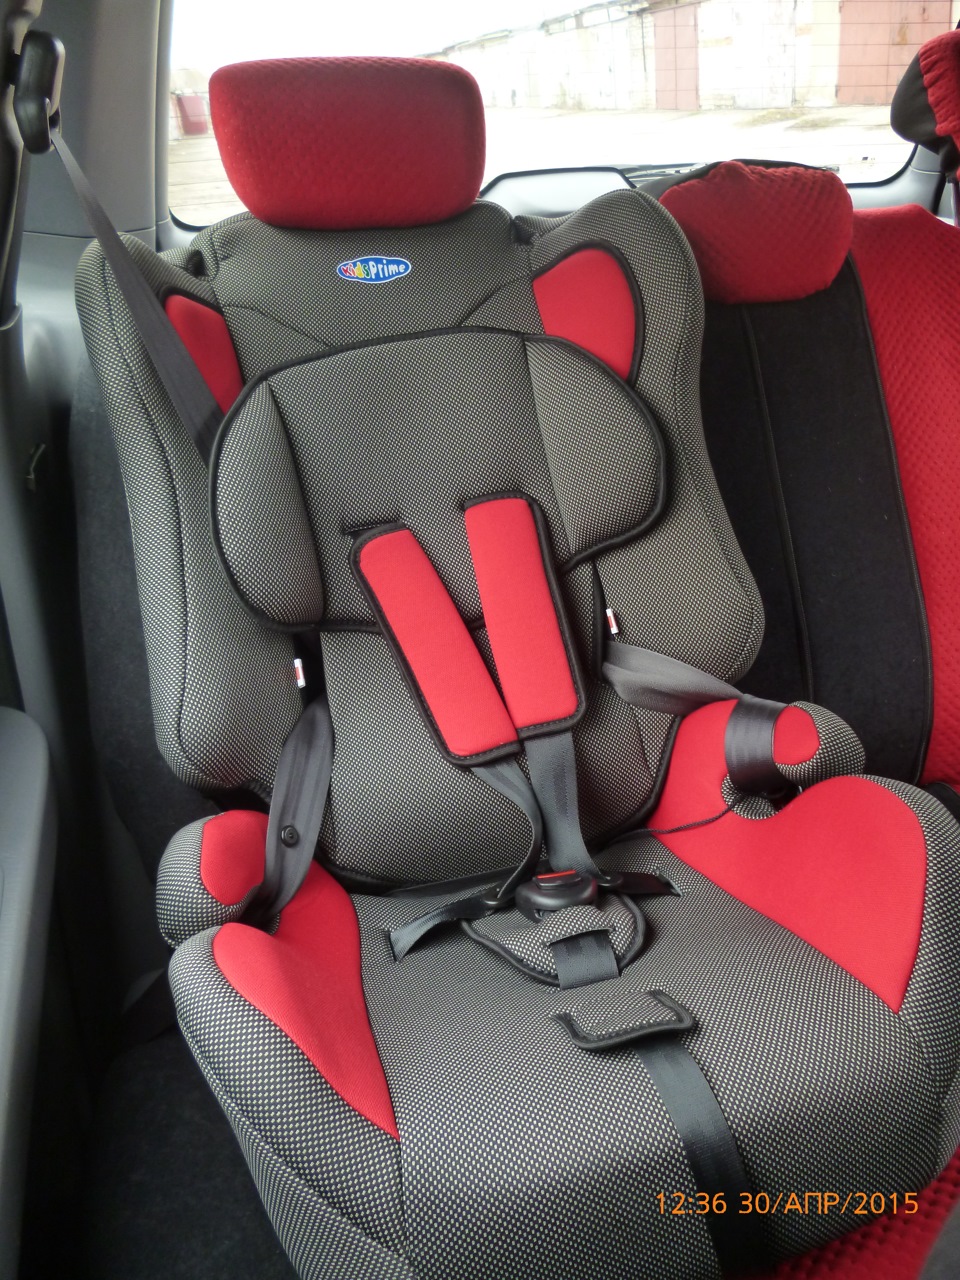 Установка детских кресел в автомобиле на заднем сидении